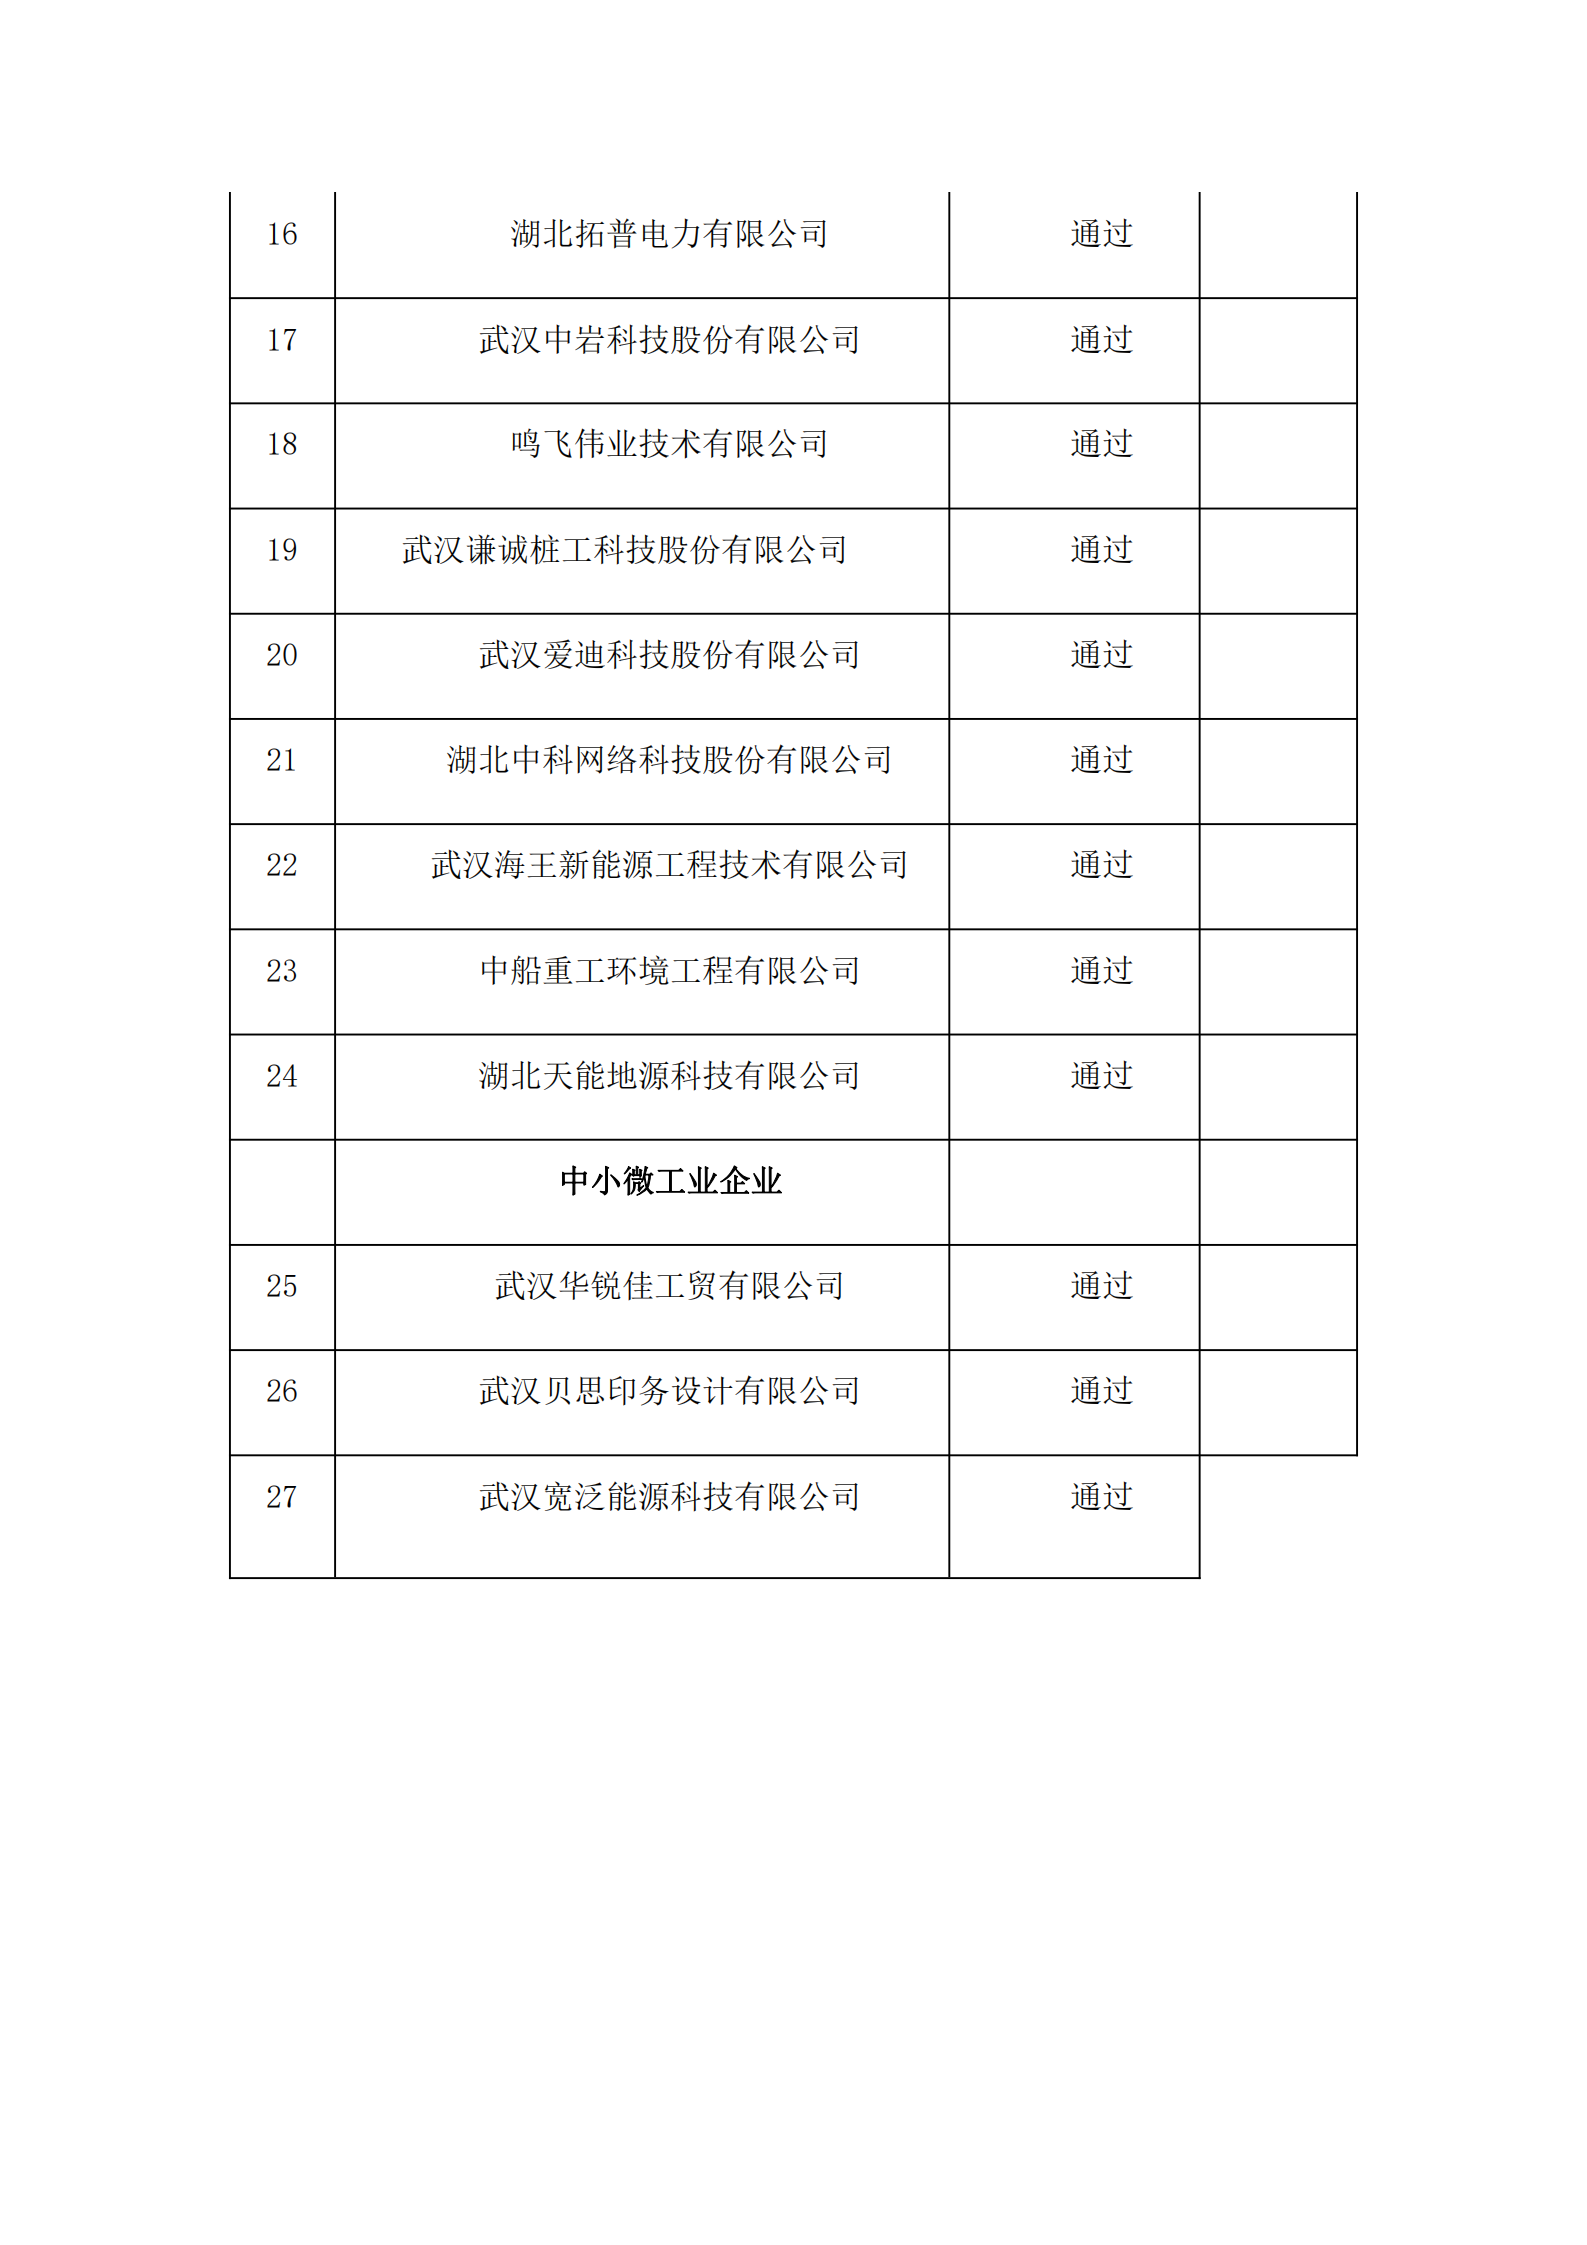 武昌区企业融资补贴审核通过企业名单_01.png